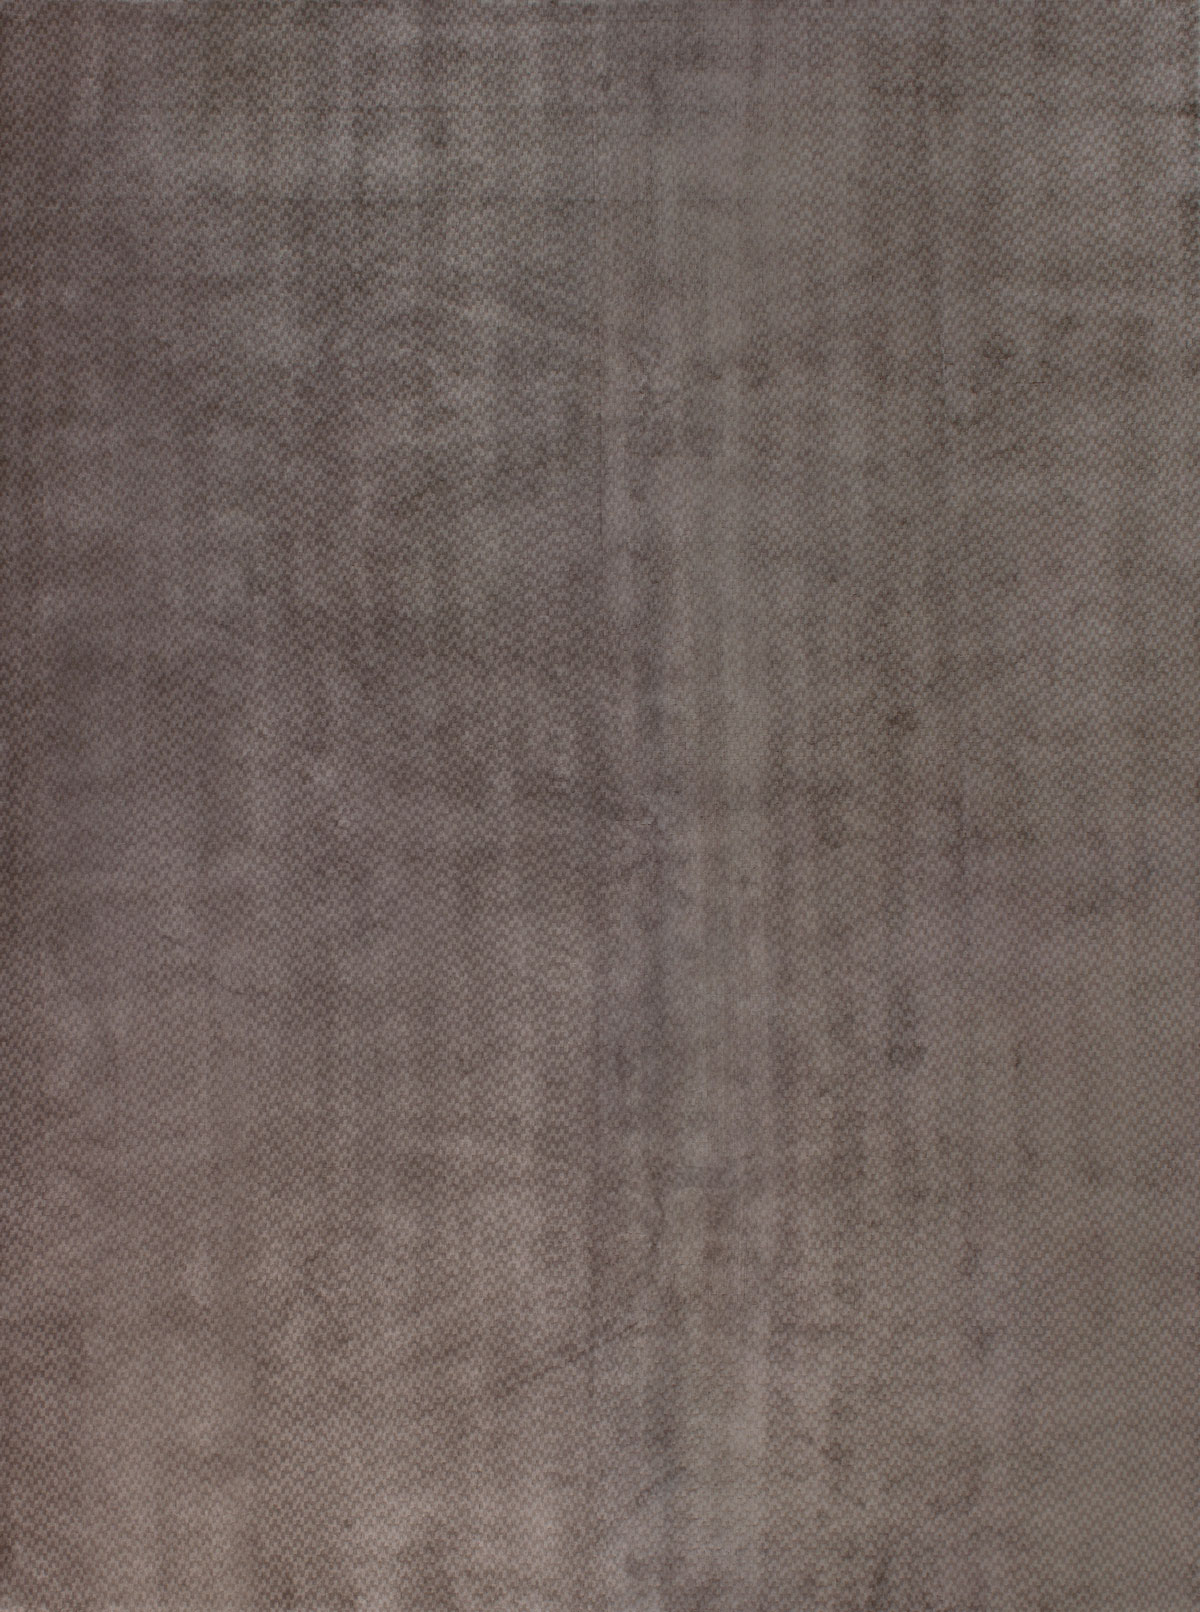 Jordan Taupe Rug ☞ Size: 200 x 300 cm